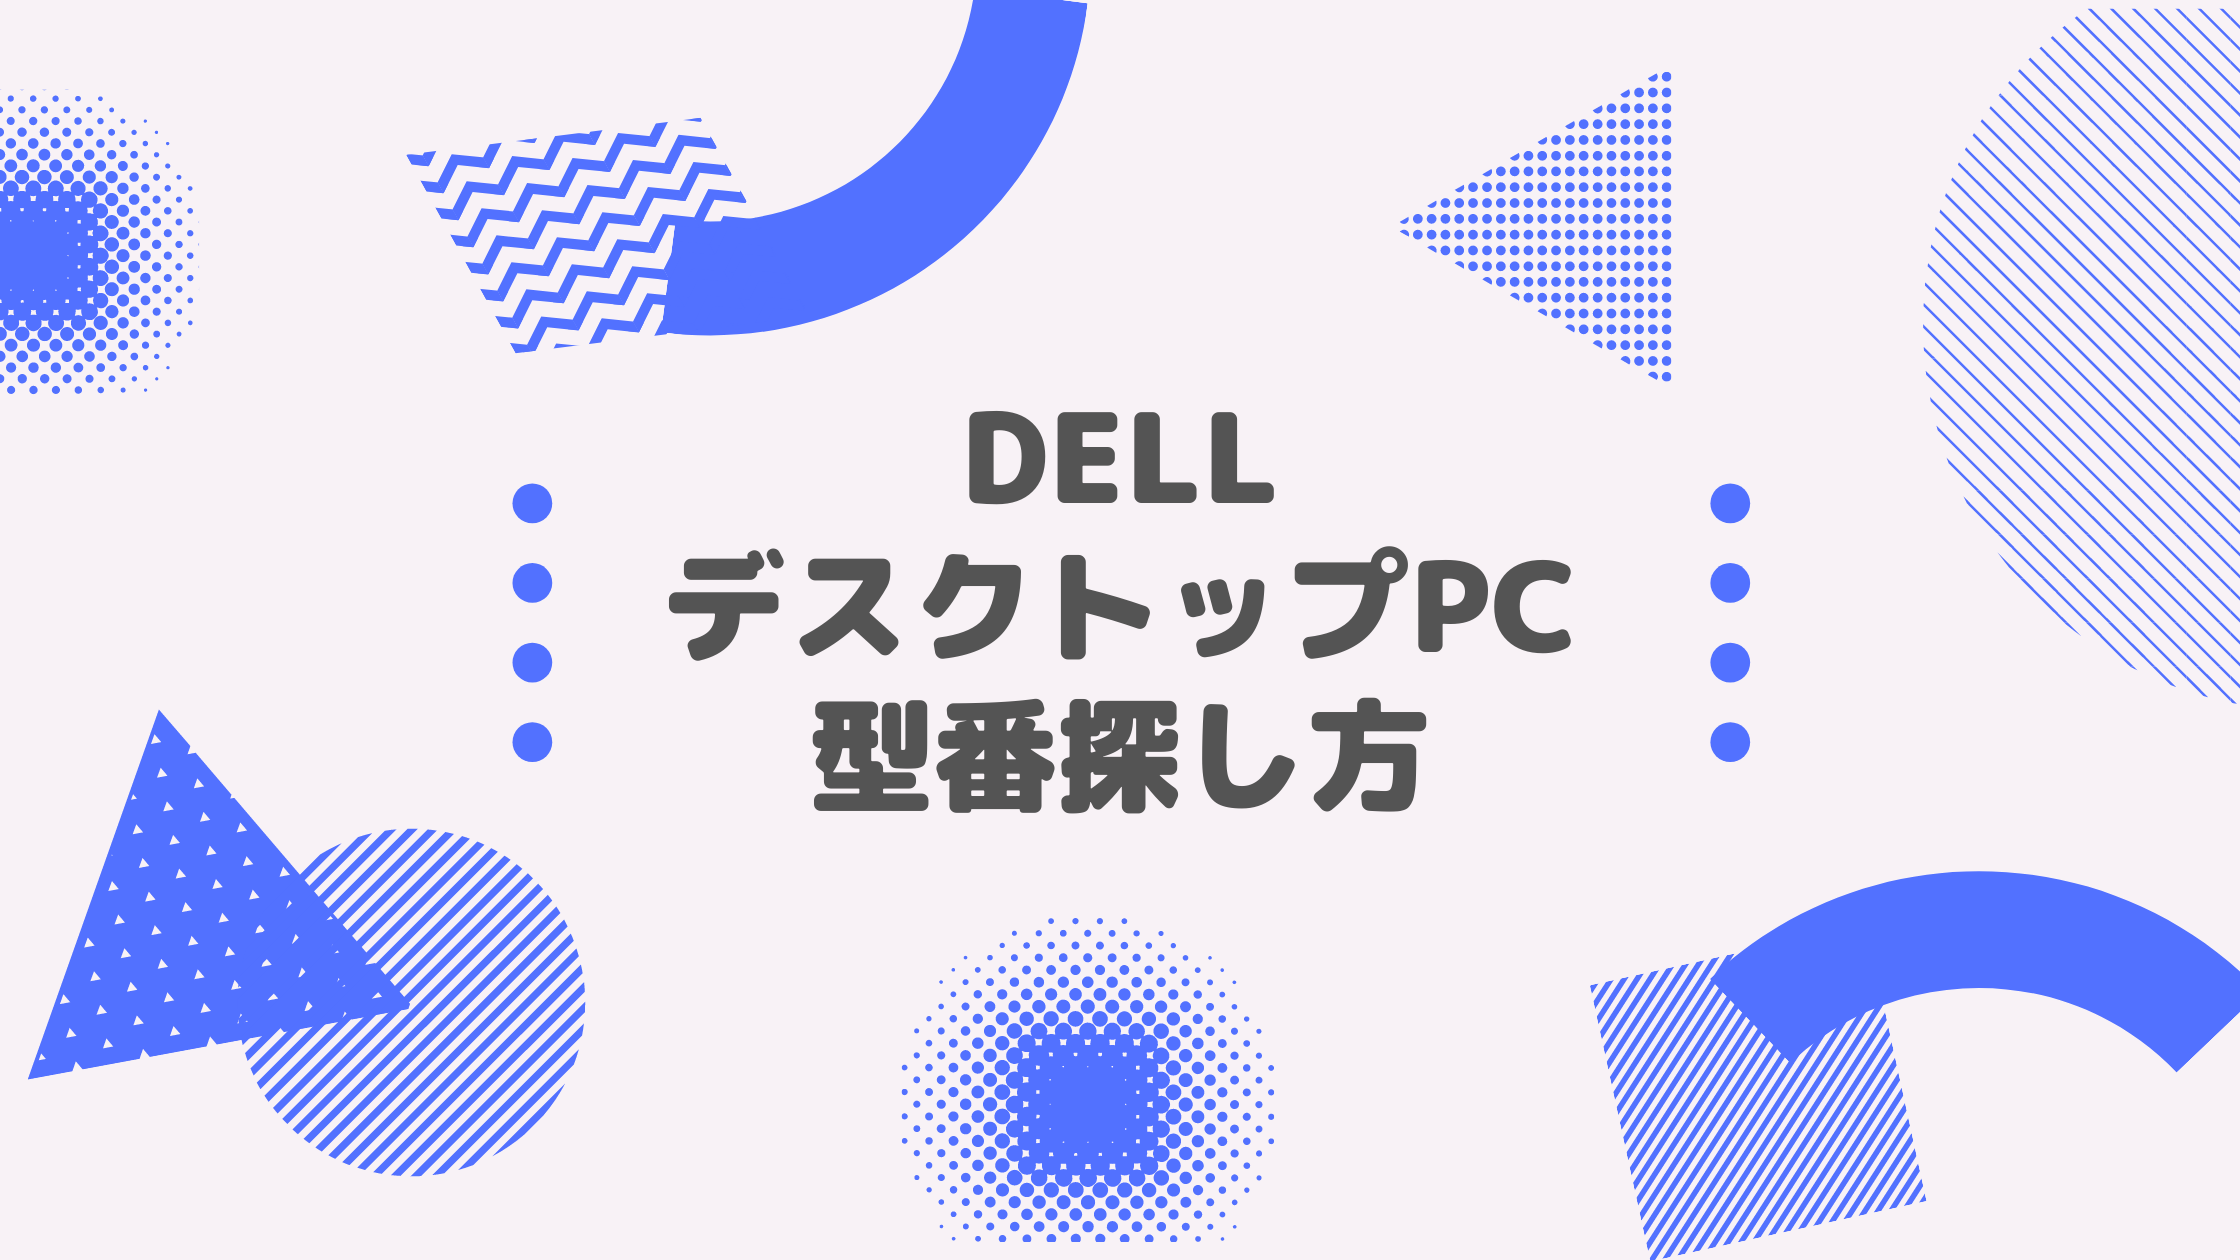 DELL(デル)_デスクトップPC_型番探し方